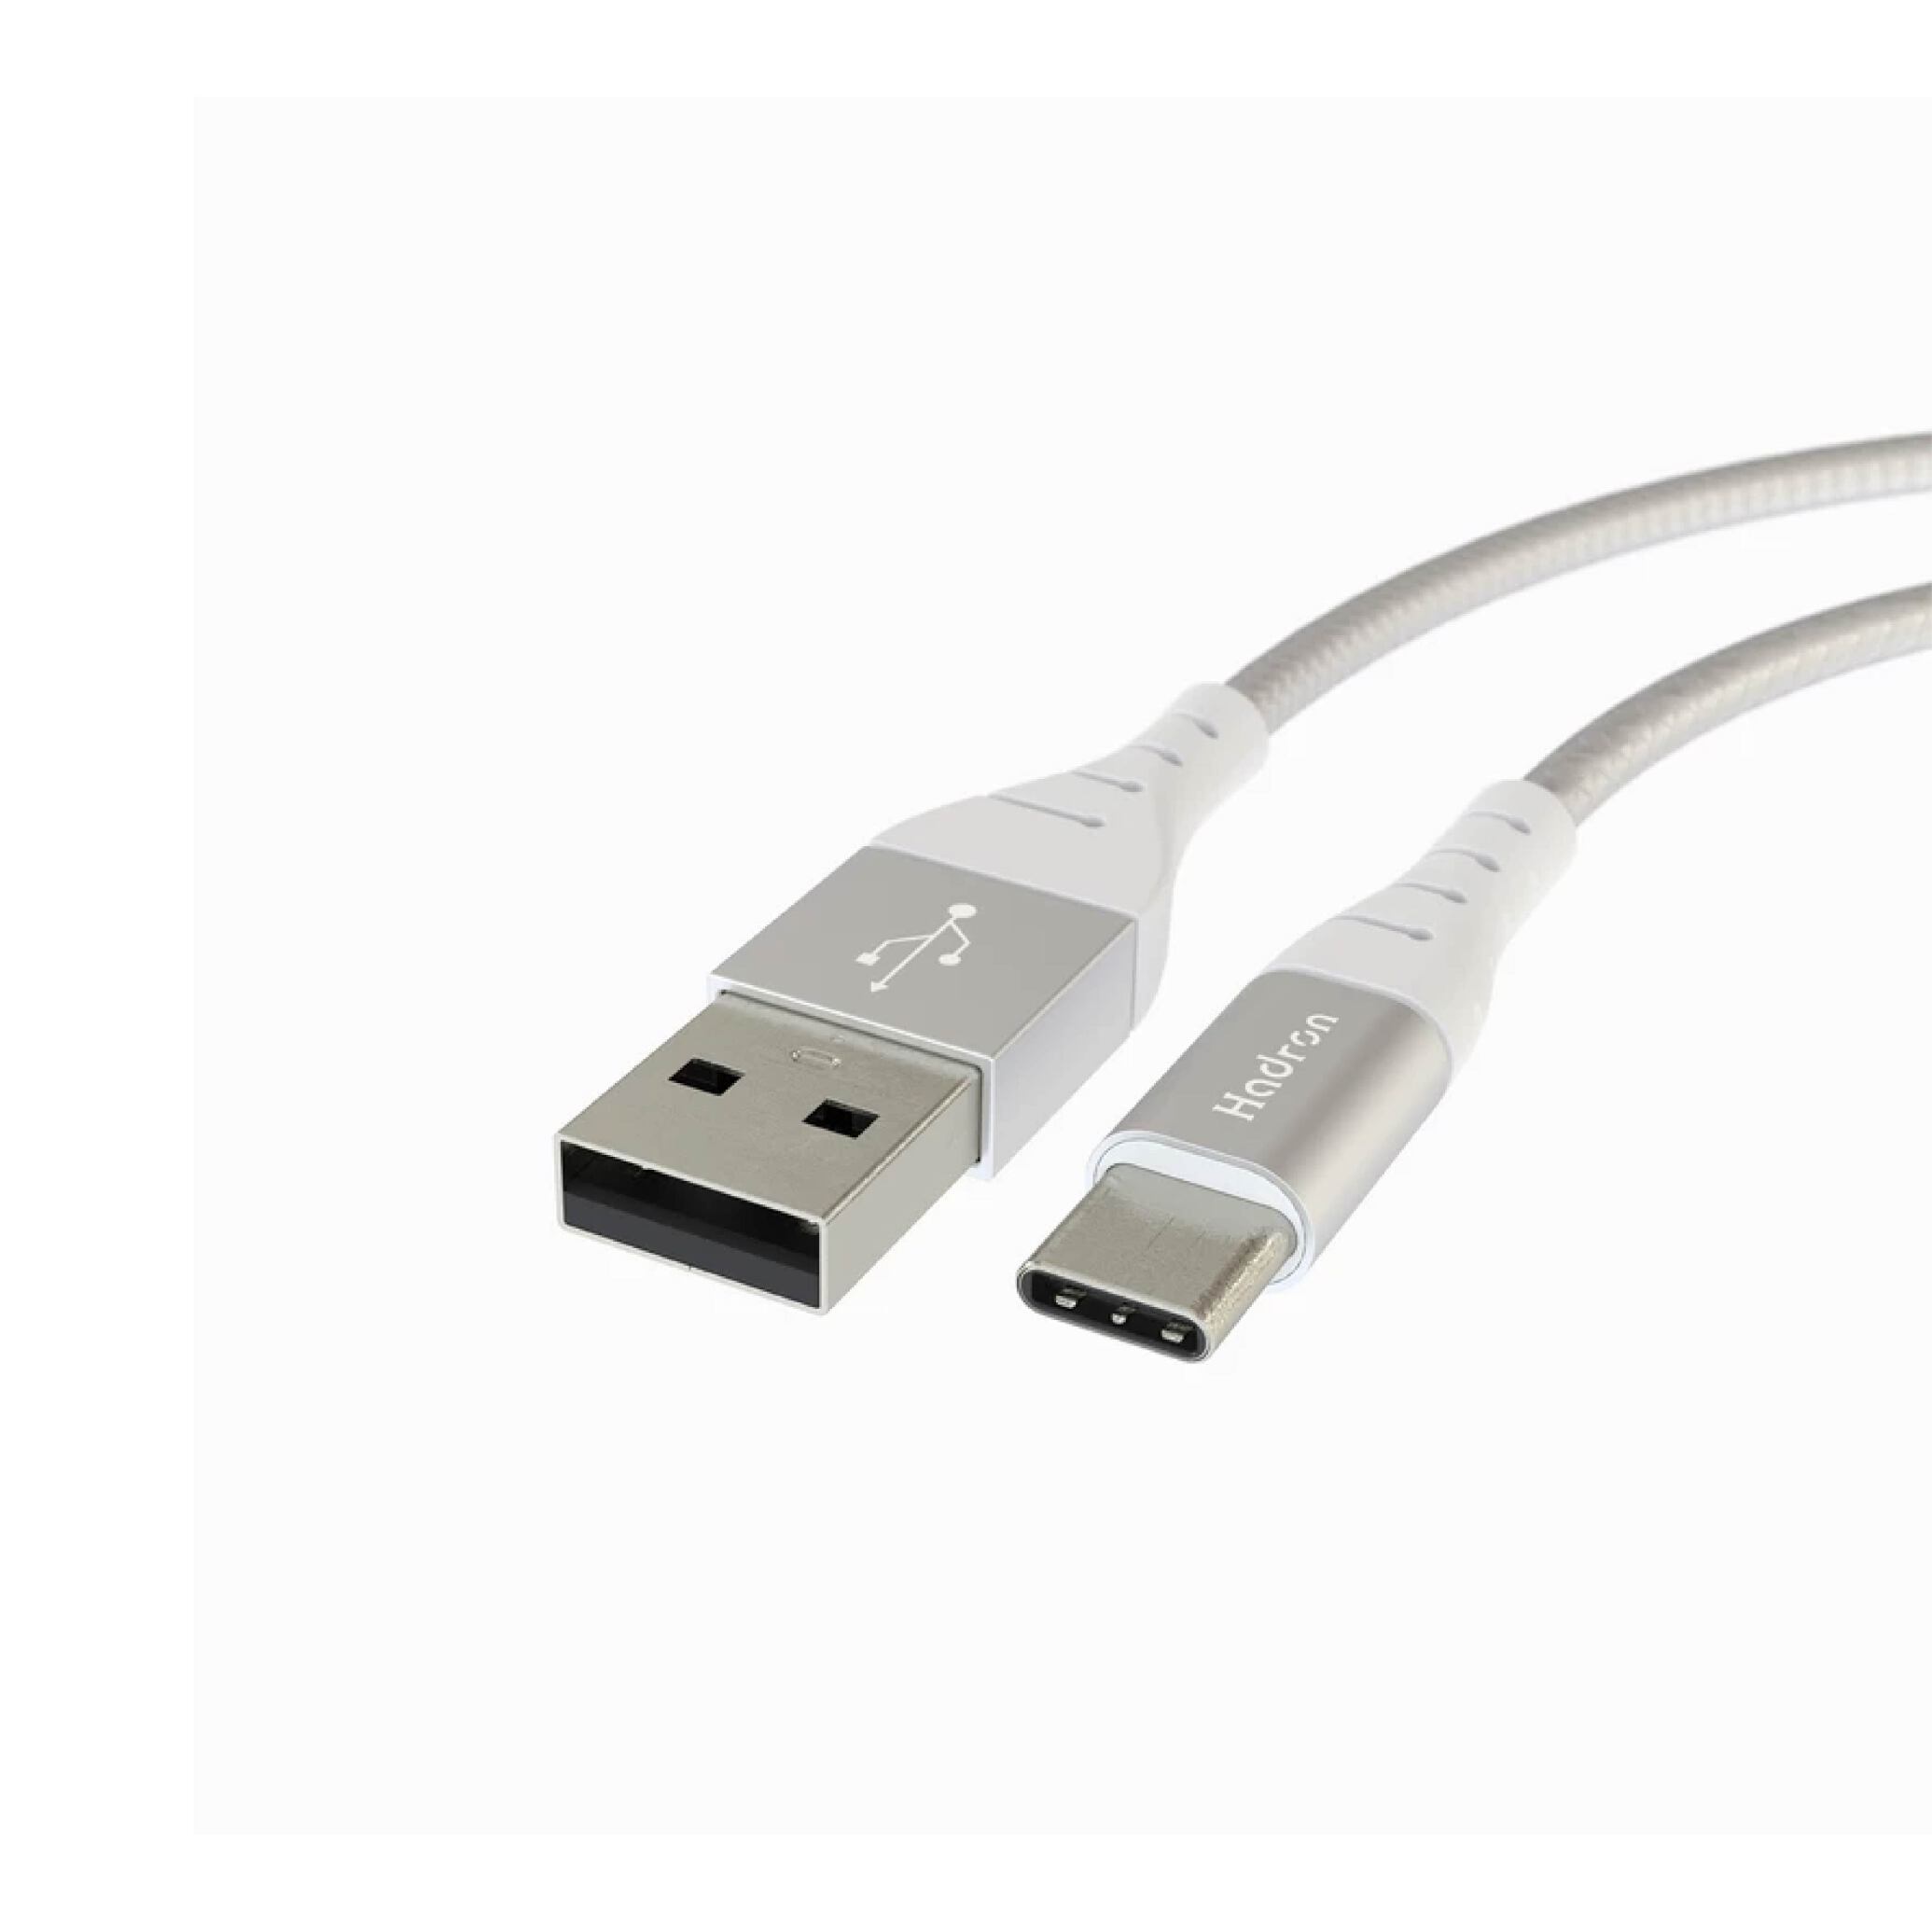  کابل USB به USB C 